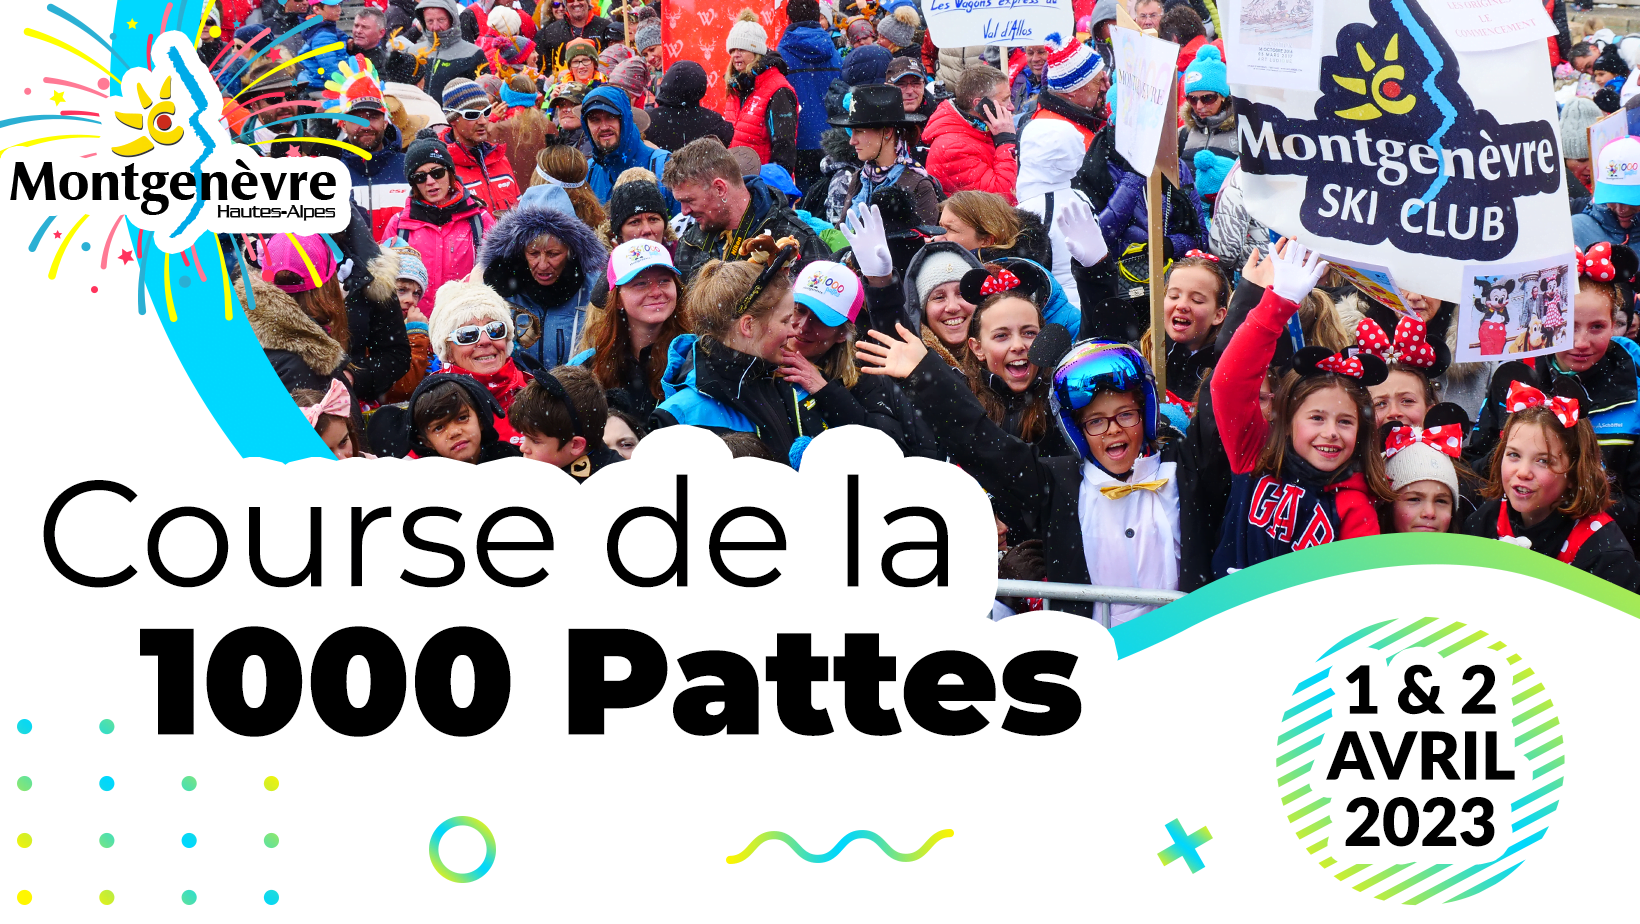 Course de la 1000 Pattes - 1 et 2 Avril 2023 - Montgenèvre